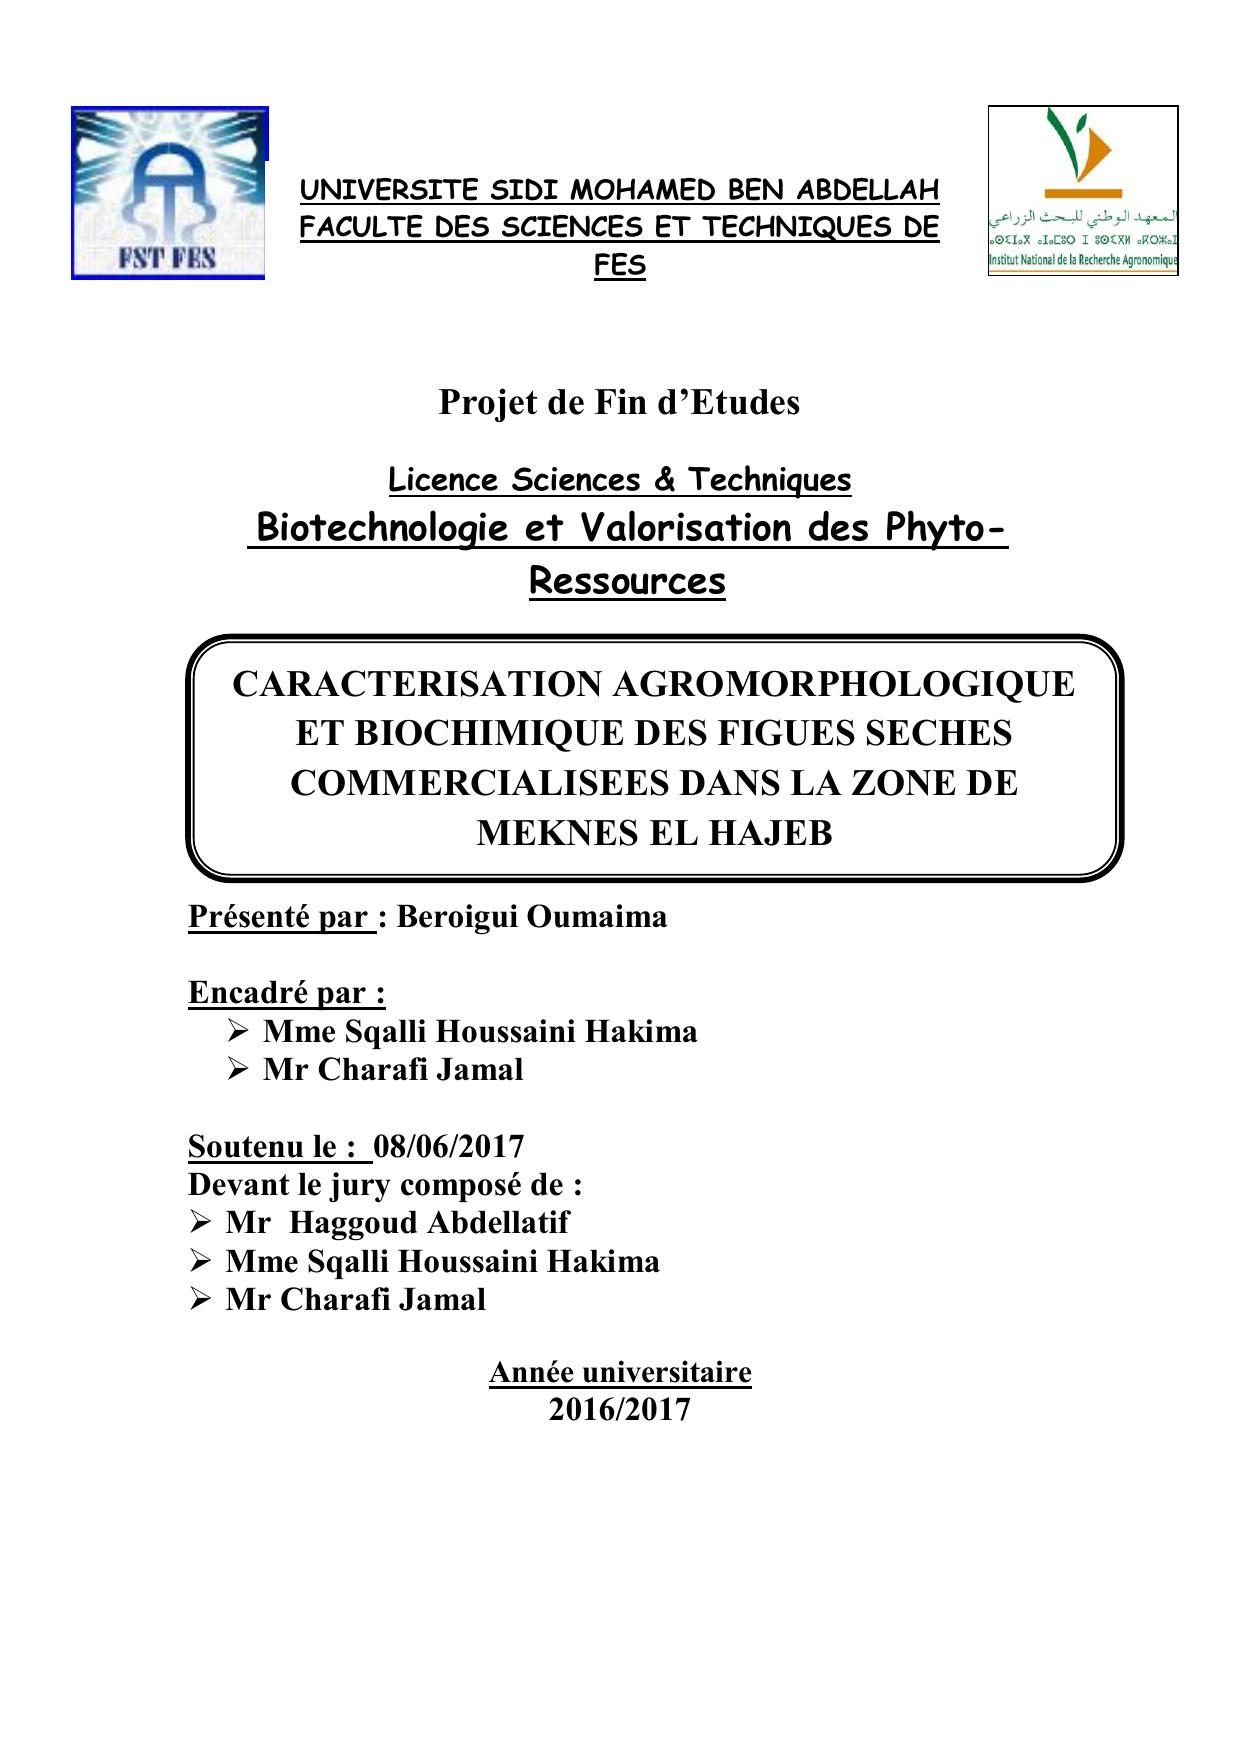 Caractérisation agromorphologique et biochimique des figues sèches commercialisées dans la zone de Meknès El HAJEB